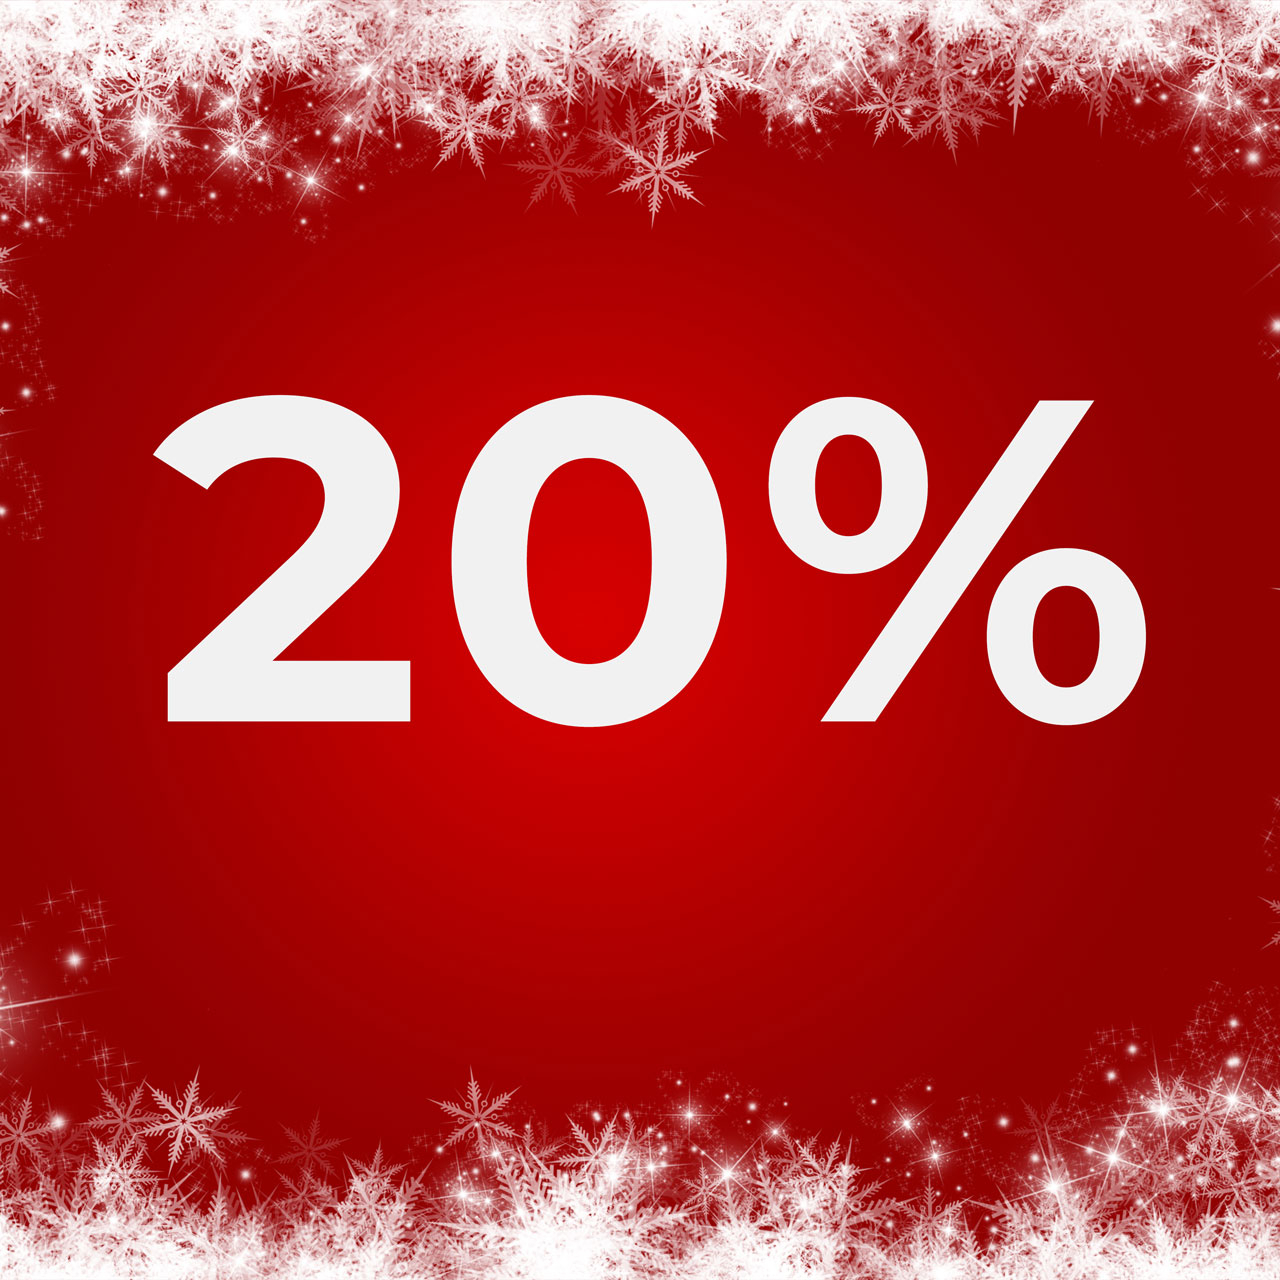 20% noch vor Weihnachten?